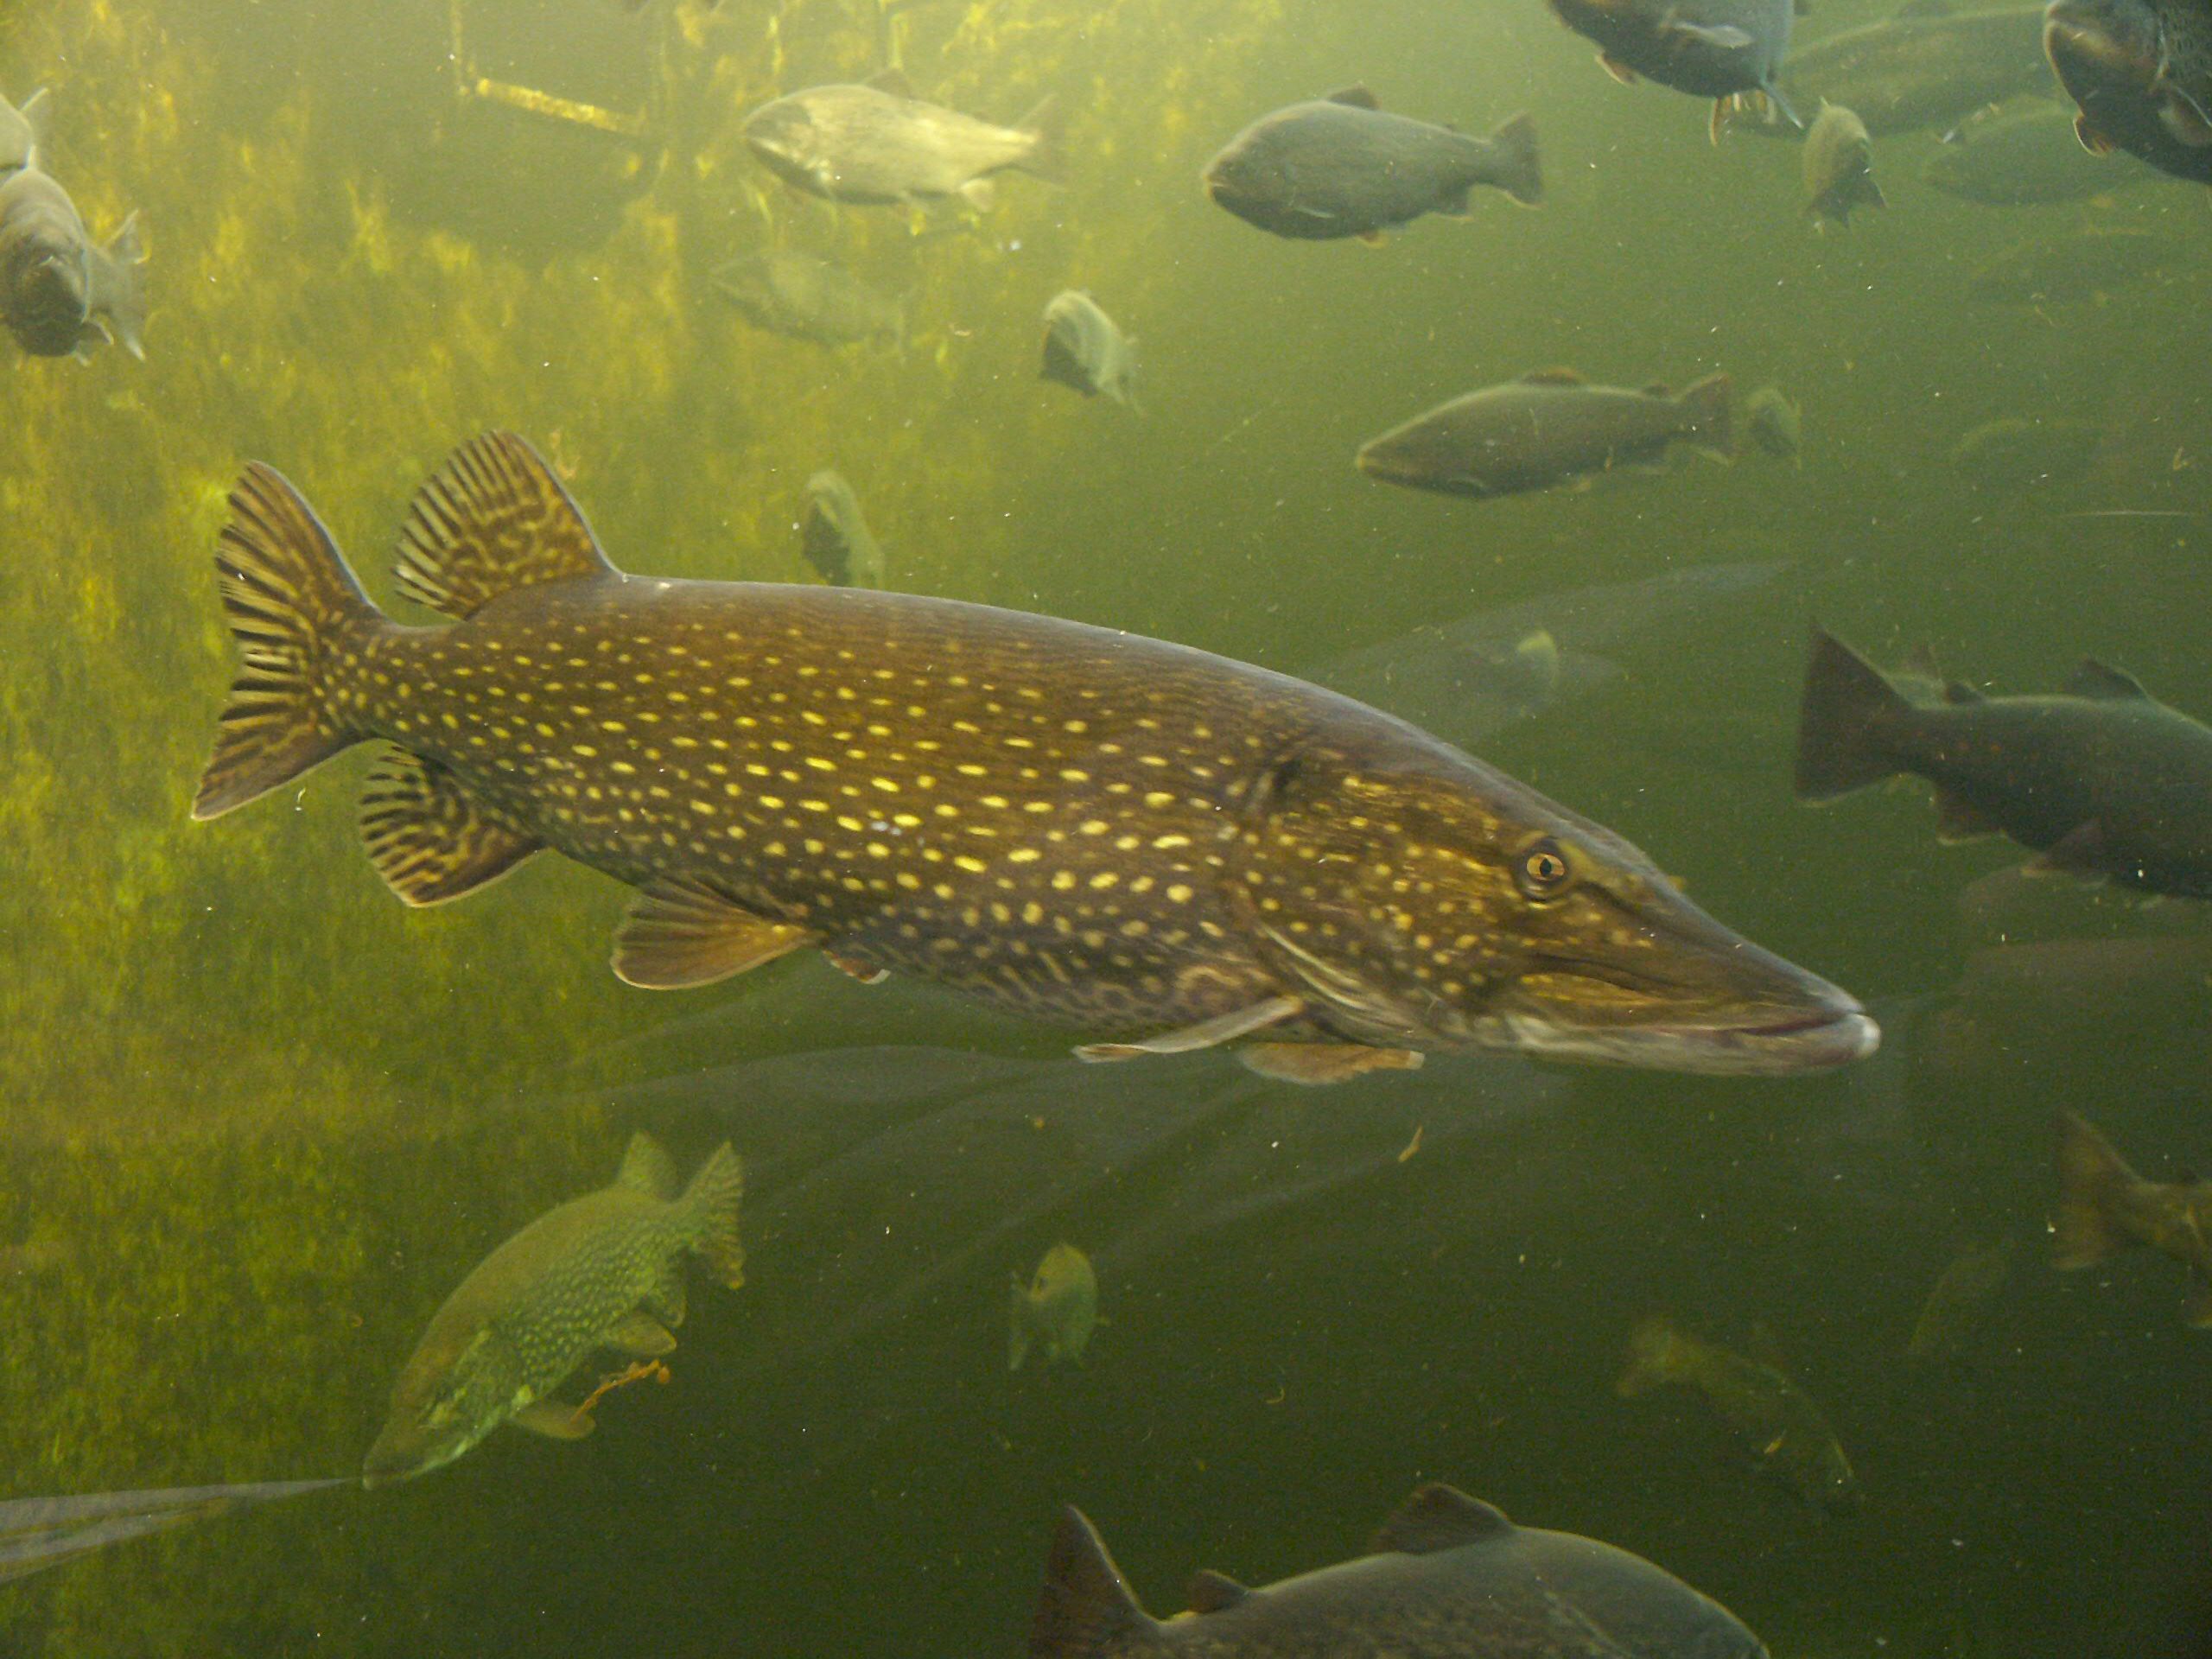 Pike em um aquário público (Kotka, Finlândia)